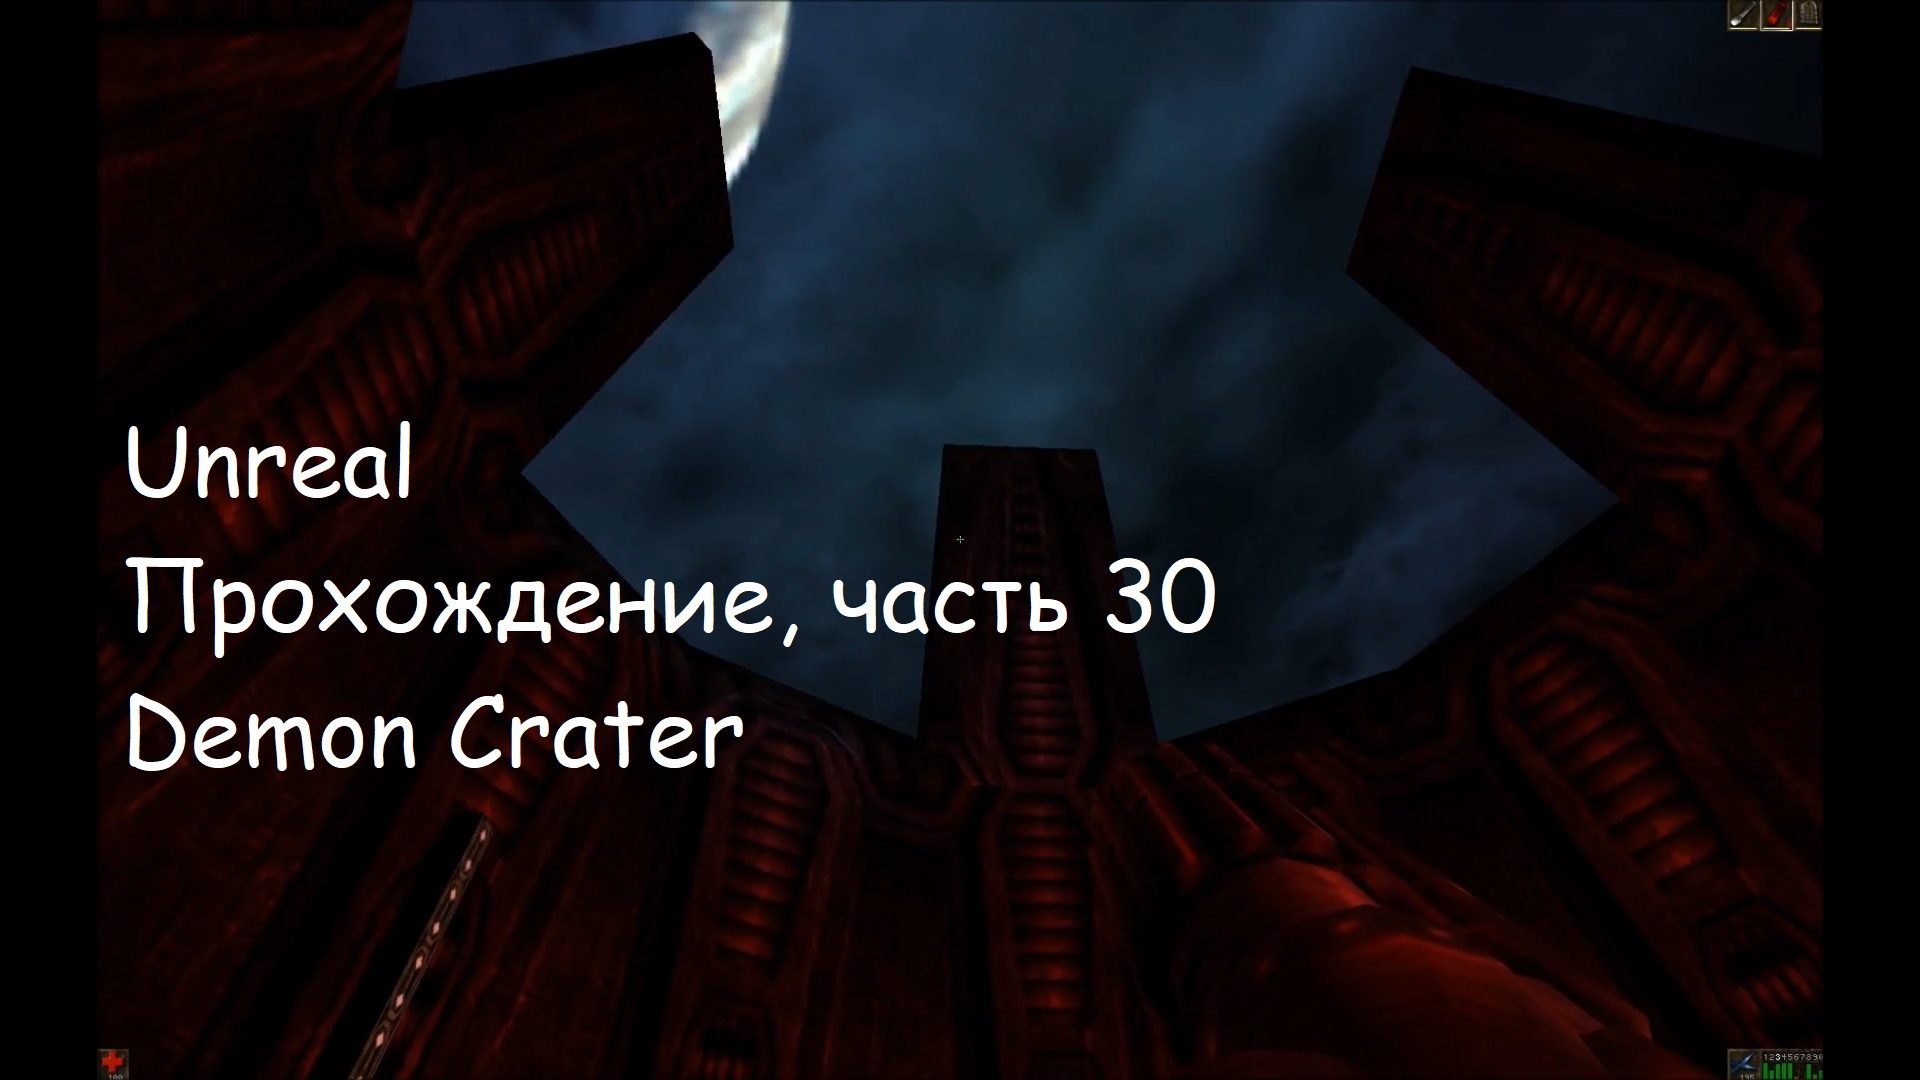 Unreal, Прохождение, часть 30 - Demon Crater